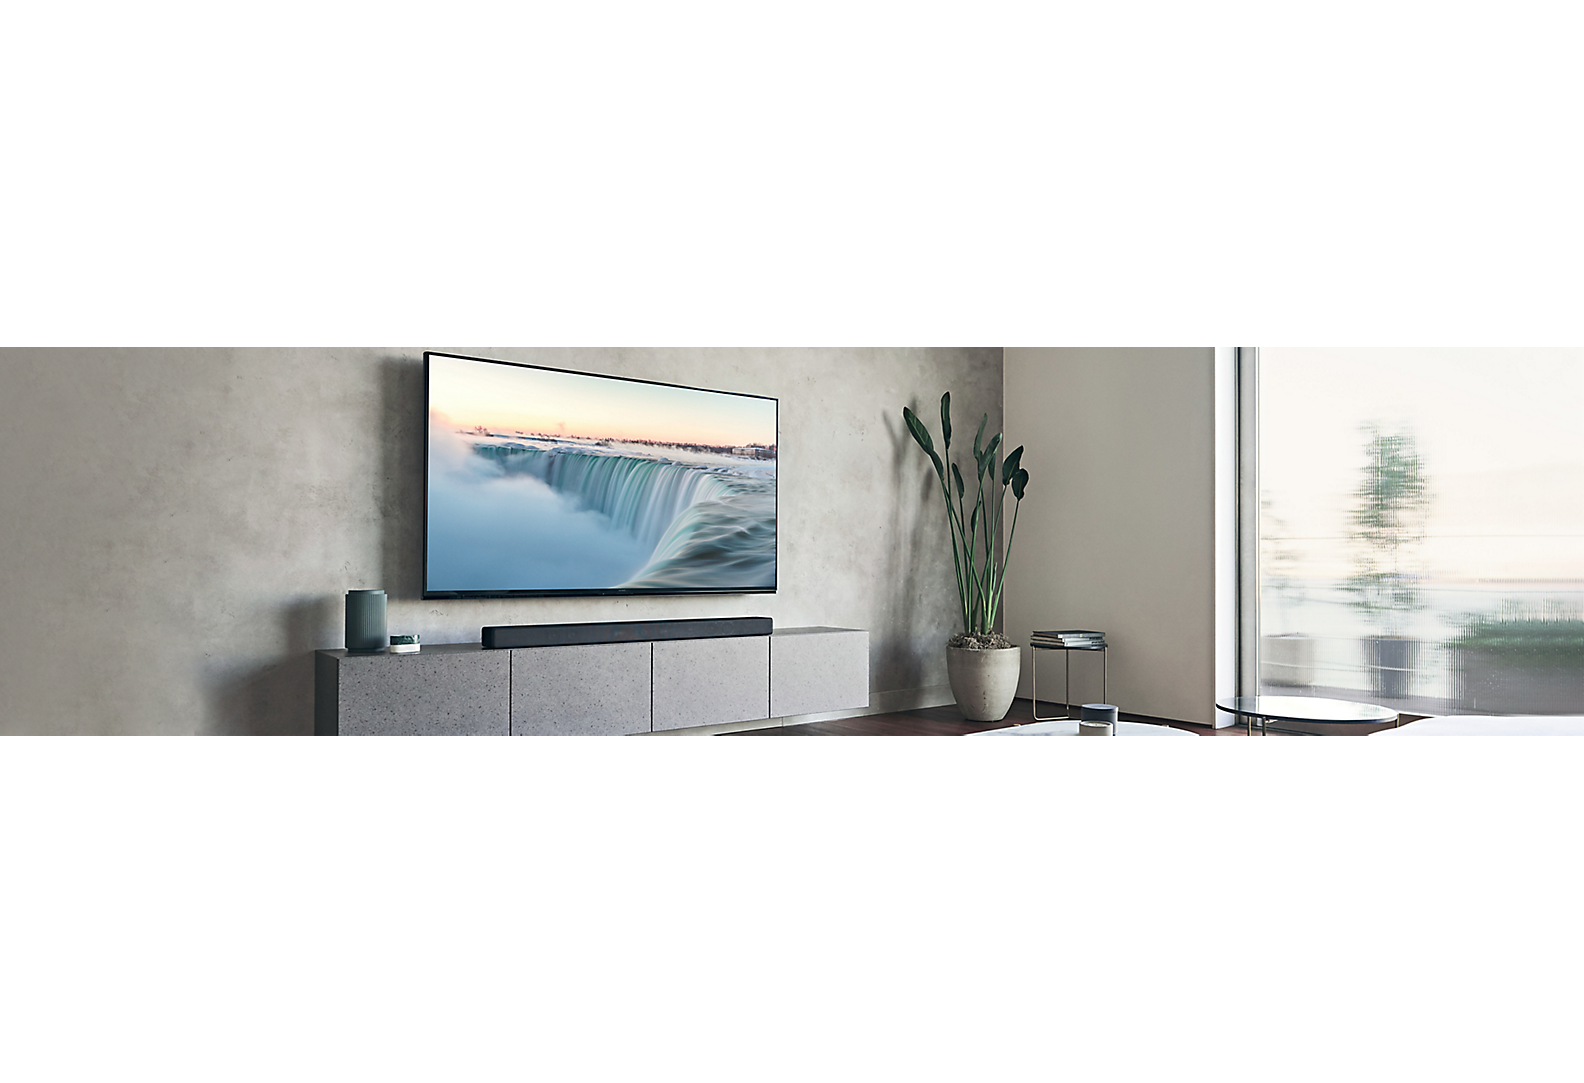 Телевизор, установленный на серой стене в гостиной в серых тонах с различными элементами декора.